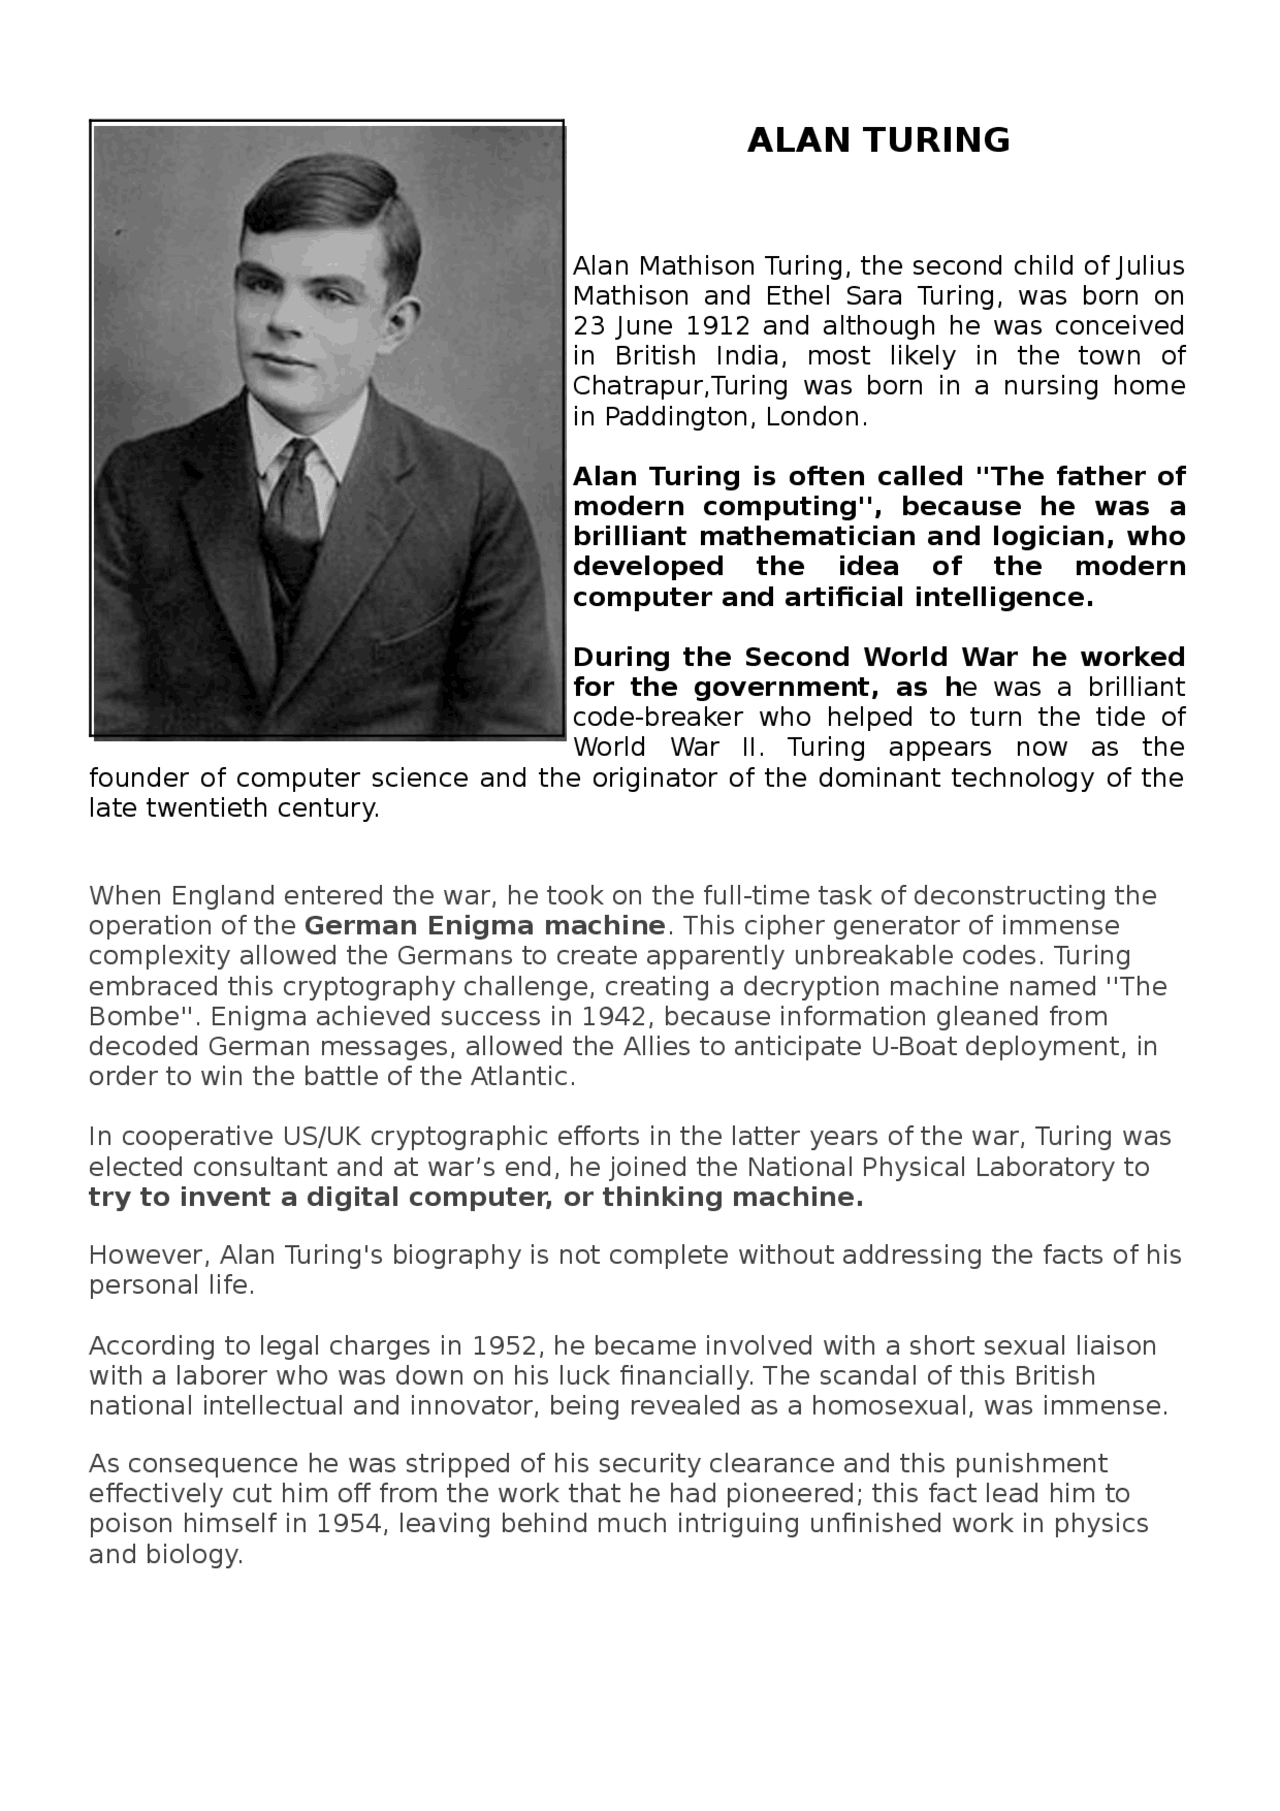  Biografía de Alan Turing